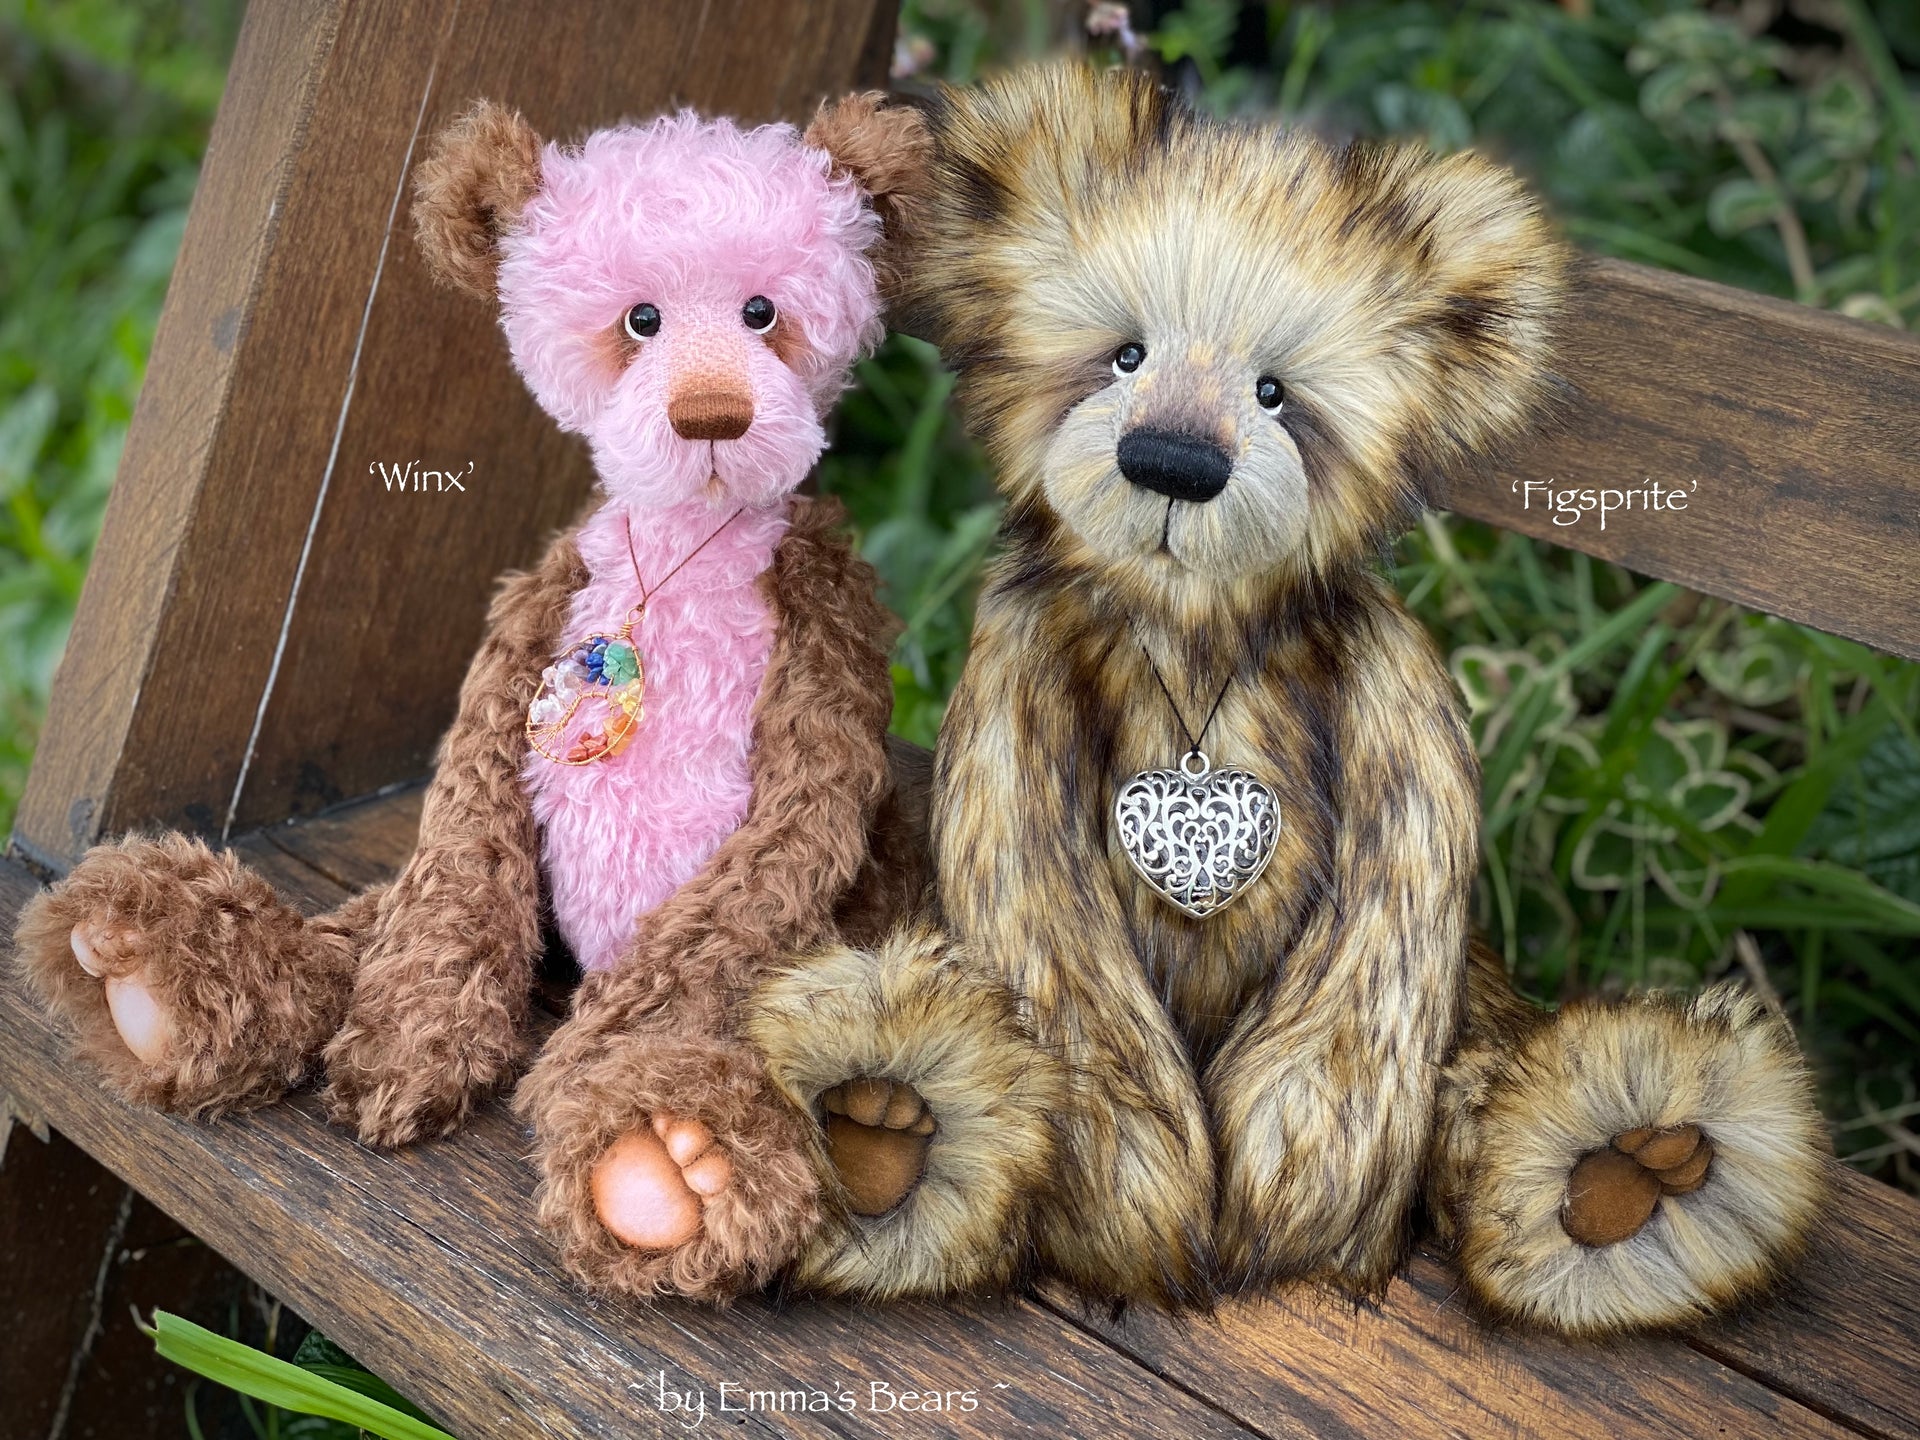 Winx - 17" skinny kid mohair bear by Emmas Bears - OOAK